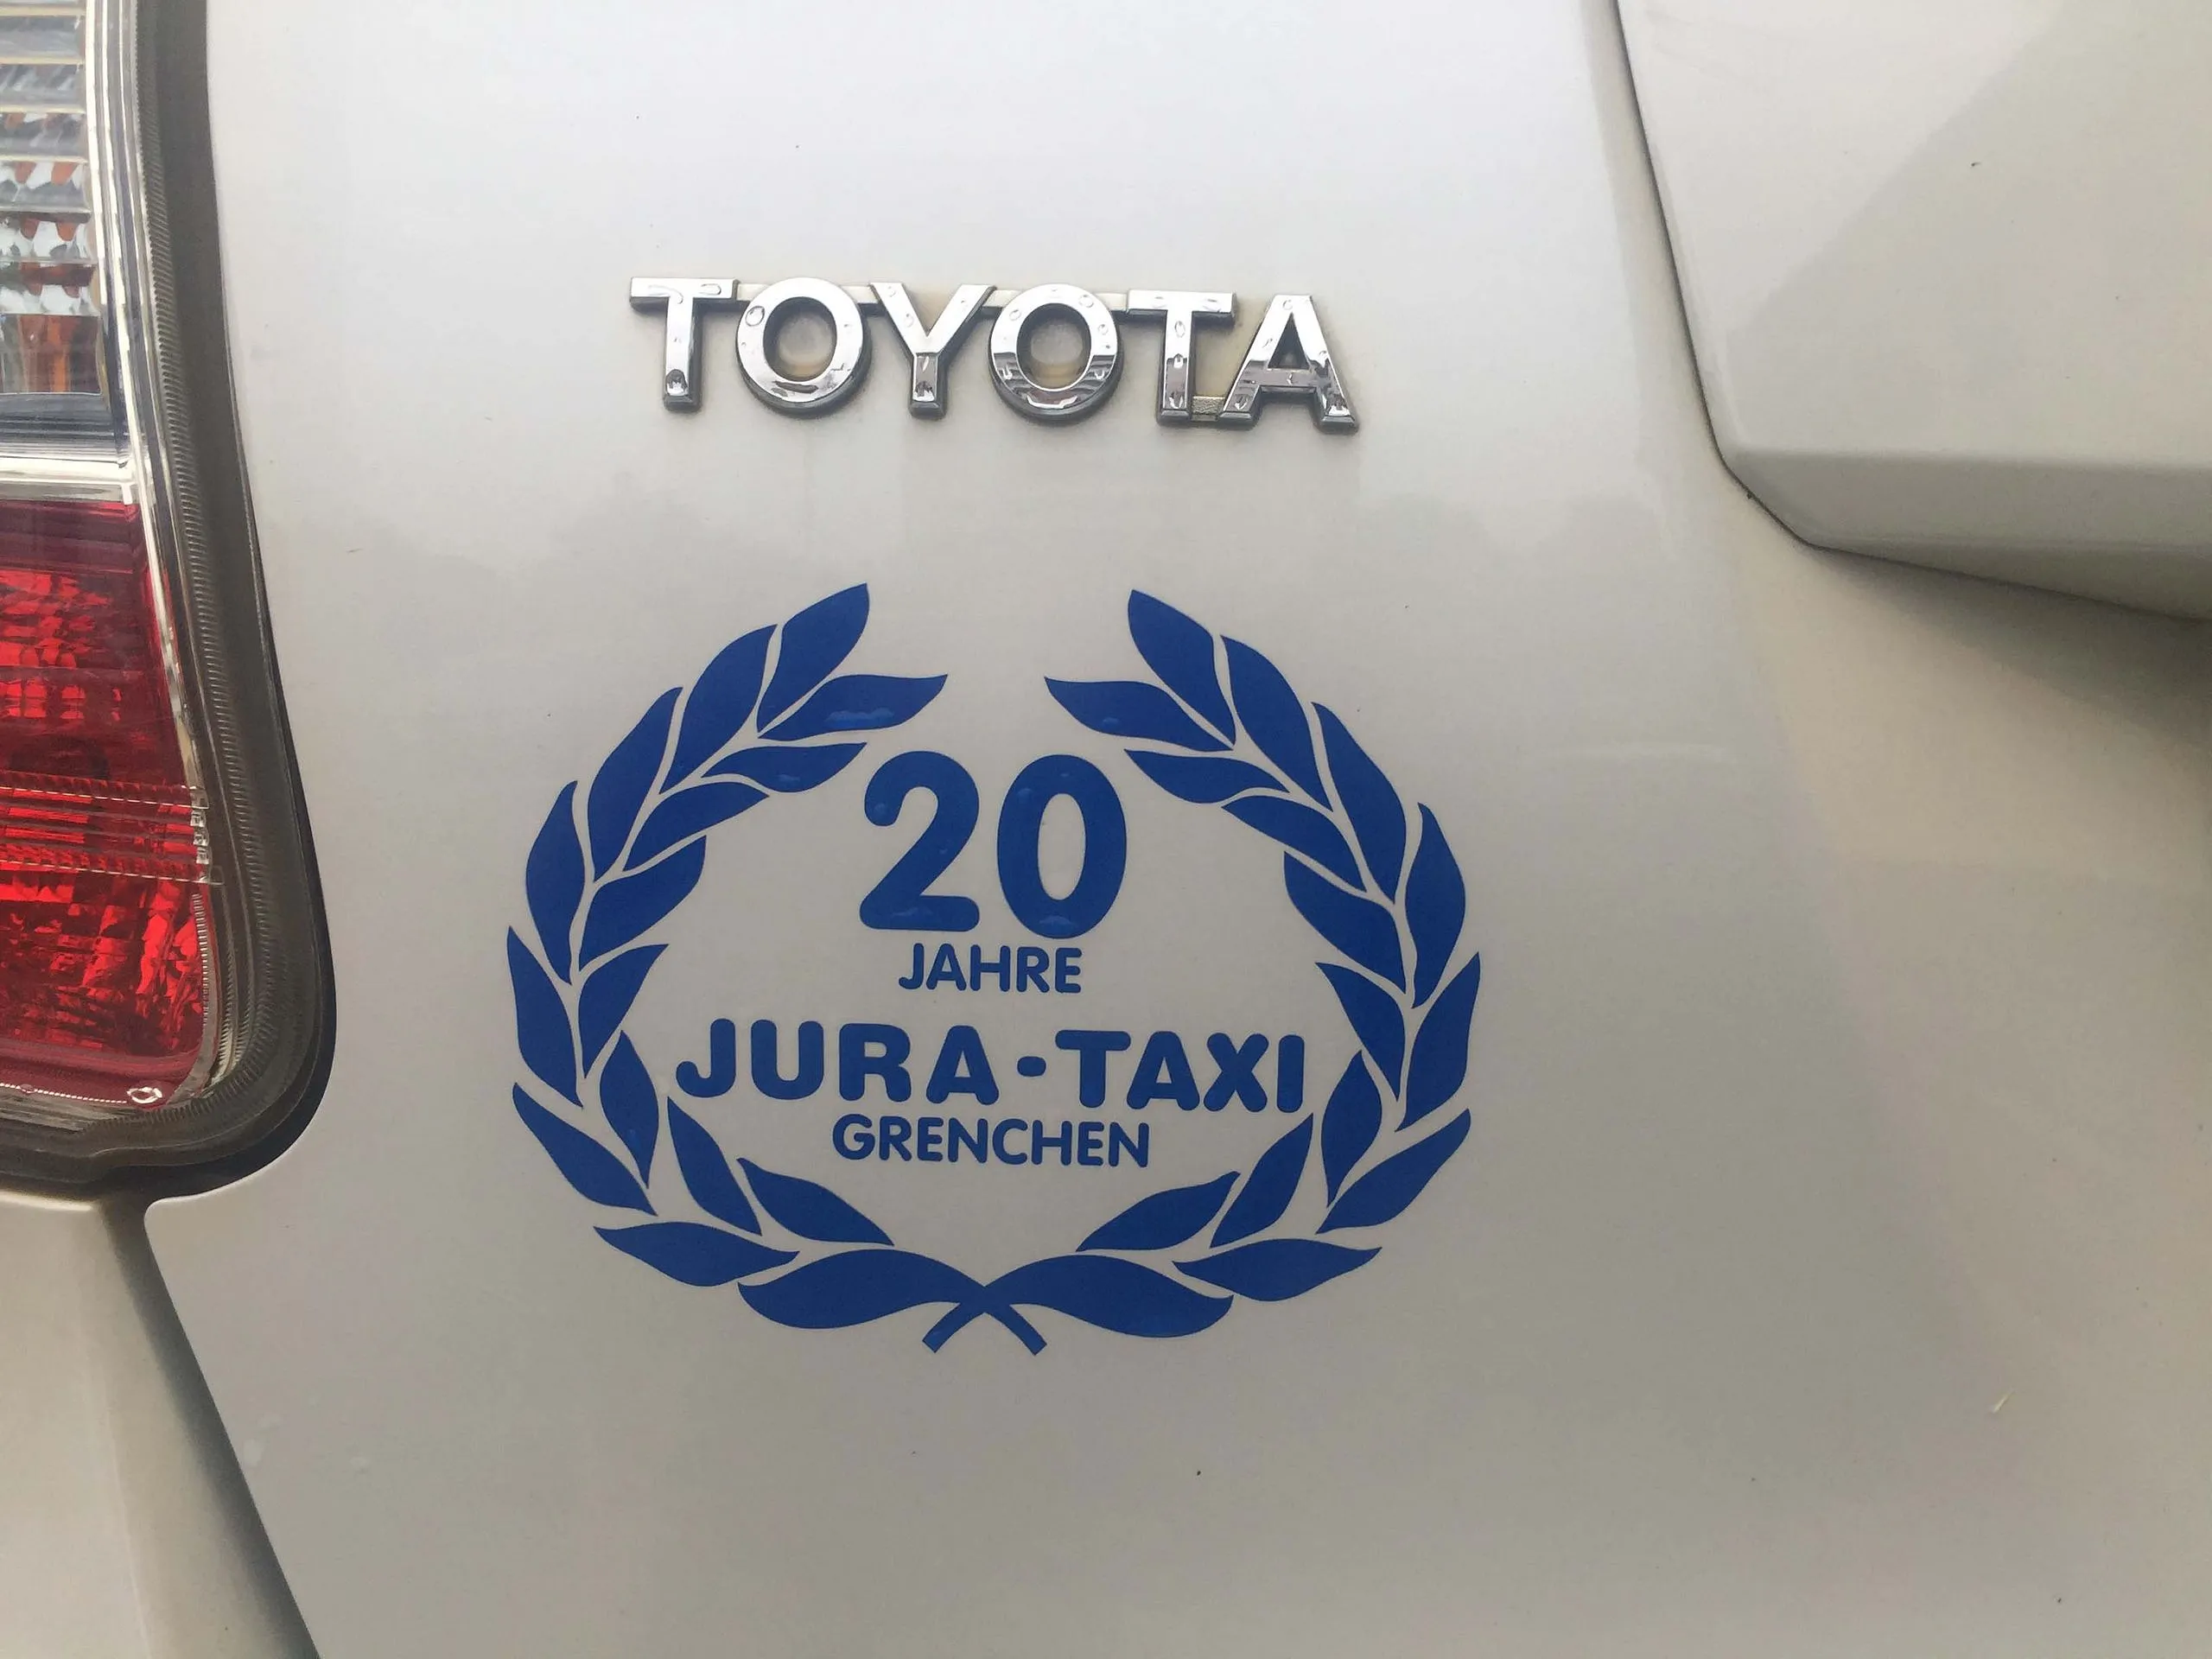 Jura-Taxi